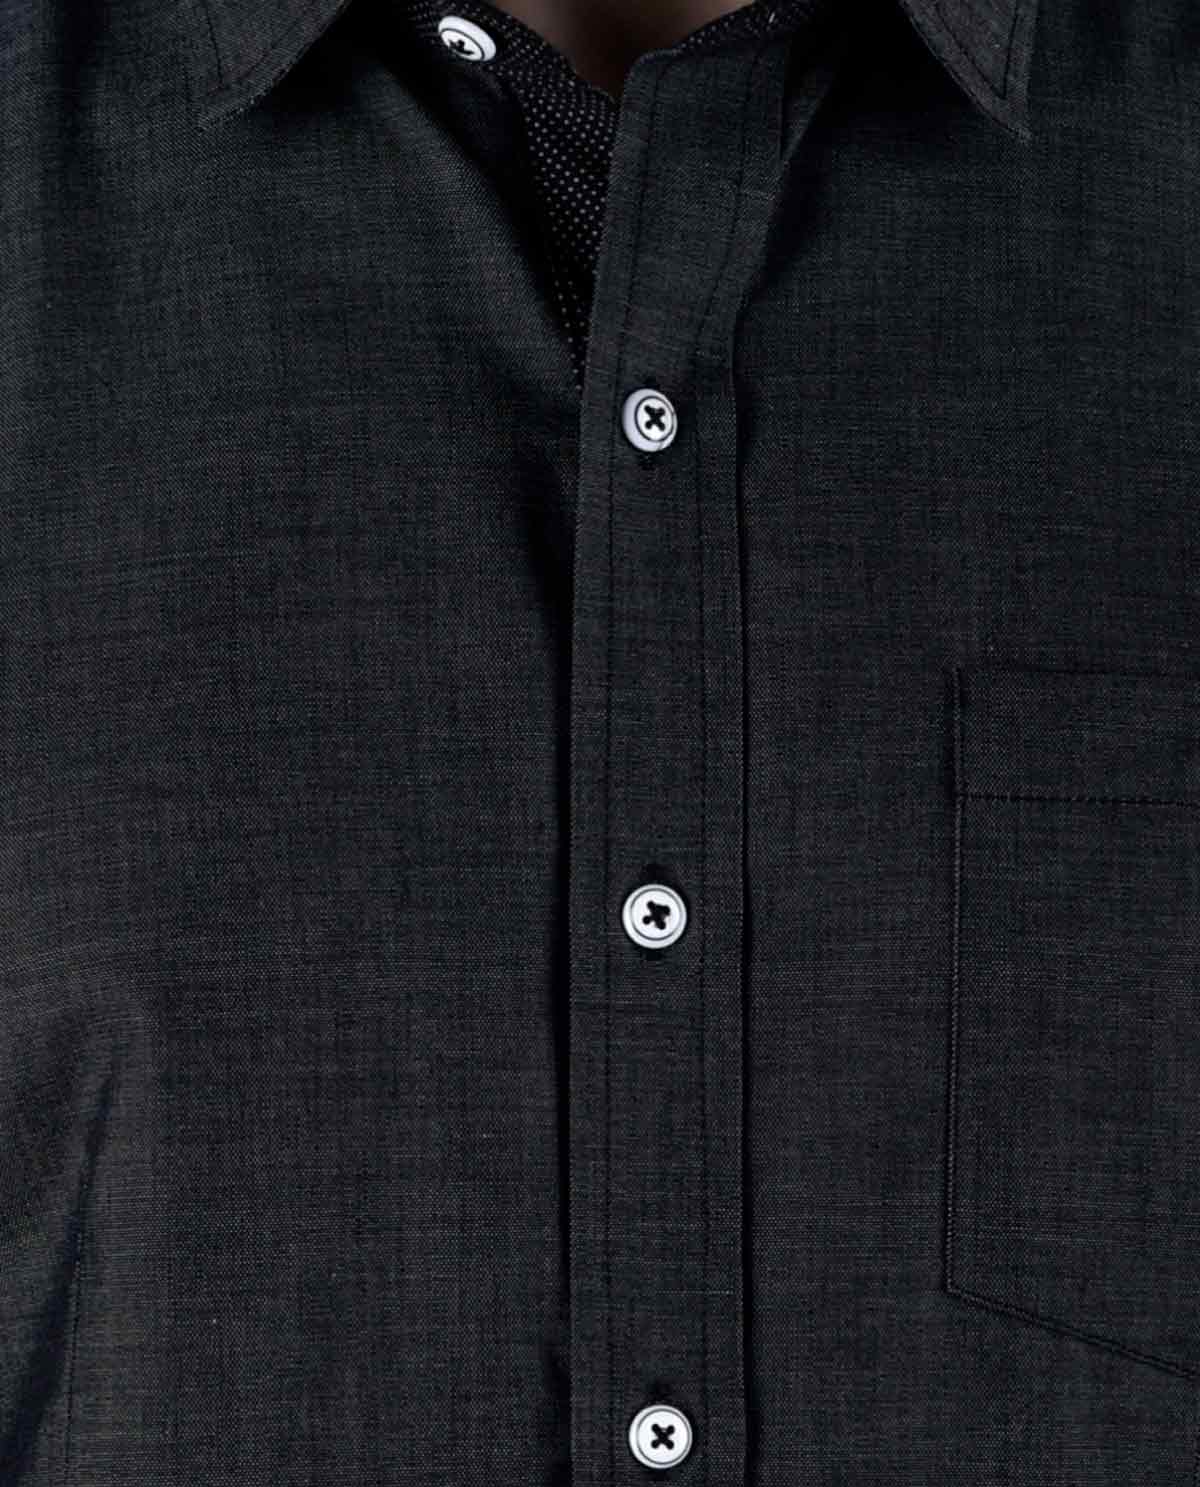 Black-Full-Sleeve-Shirt-for-Men-6 - Kashvi Designs